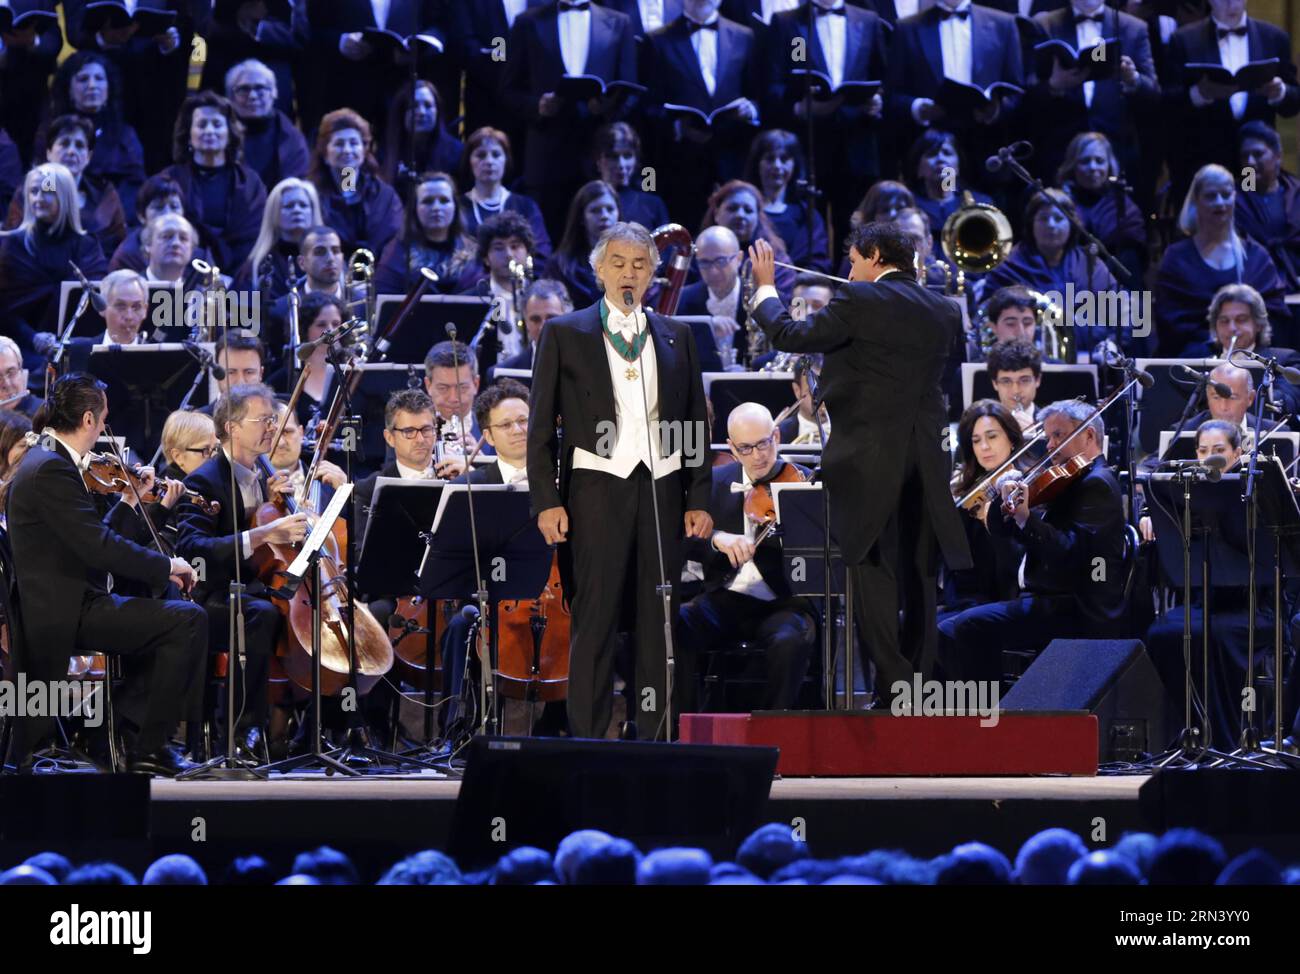 Il tenore italiano Andrea Bocelli (C) si esibisce durante la cerimonia di apertura dell'Expo Milano 2015, a Milano, Italia, 30 aprile 2015. L'Expo di Milano con il tema Feeding the Planet, Energy for Life si svolgerà dal 1° maggio al 31 ottobre. ) ITALY-MILAN-EXPO-OPENING CEREMONY YexPingfan PUBLICATIONxNOTxINxCHN il tenore italiano Andrea Bocelli C si esibisce durante la cerimonia di apertura del 2015 Milano EXPO a Milano Italia aprile 30 2015 l'EXPO di Milano con il tema Feeding the Planet Energy for Life si svolgerà dal 1 maggio al 31 ottobre Italia Milano EXPO Opening Ceremony YexPingfan PUBLICATIONxNOTxINxCHN Foto Stock